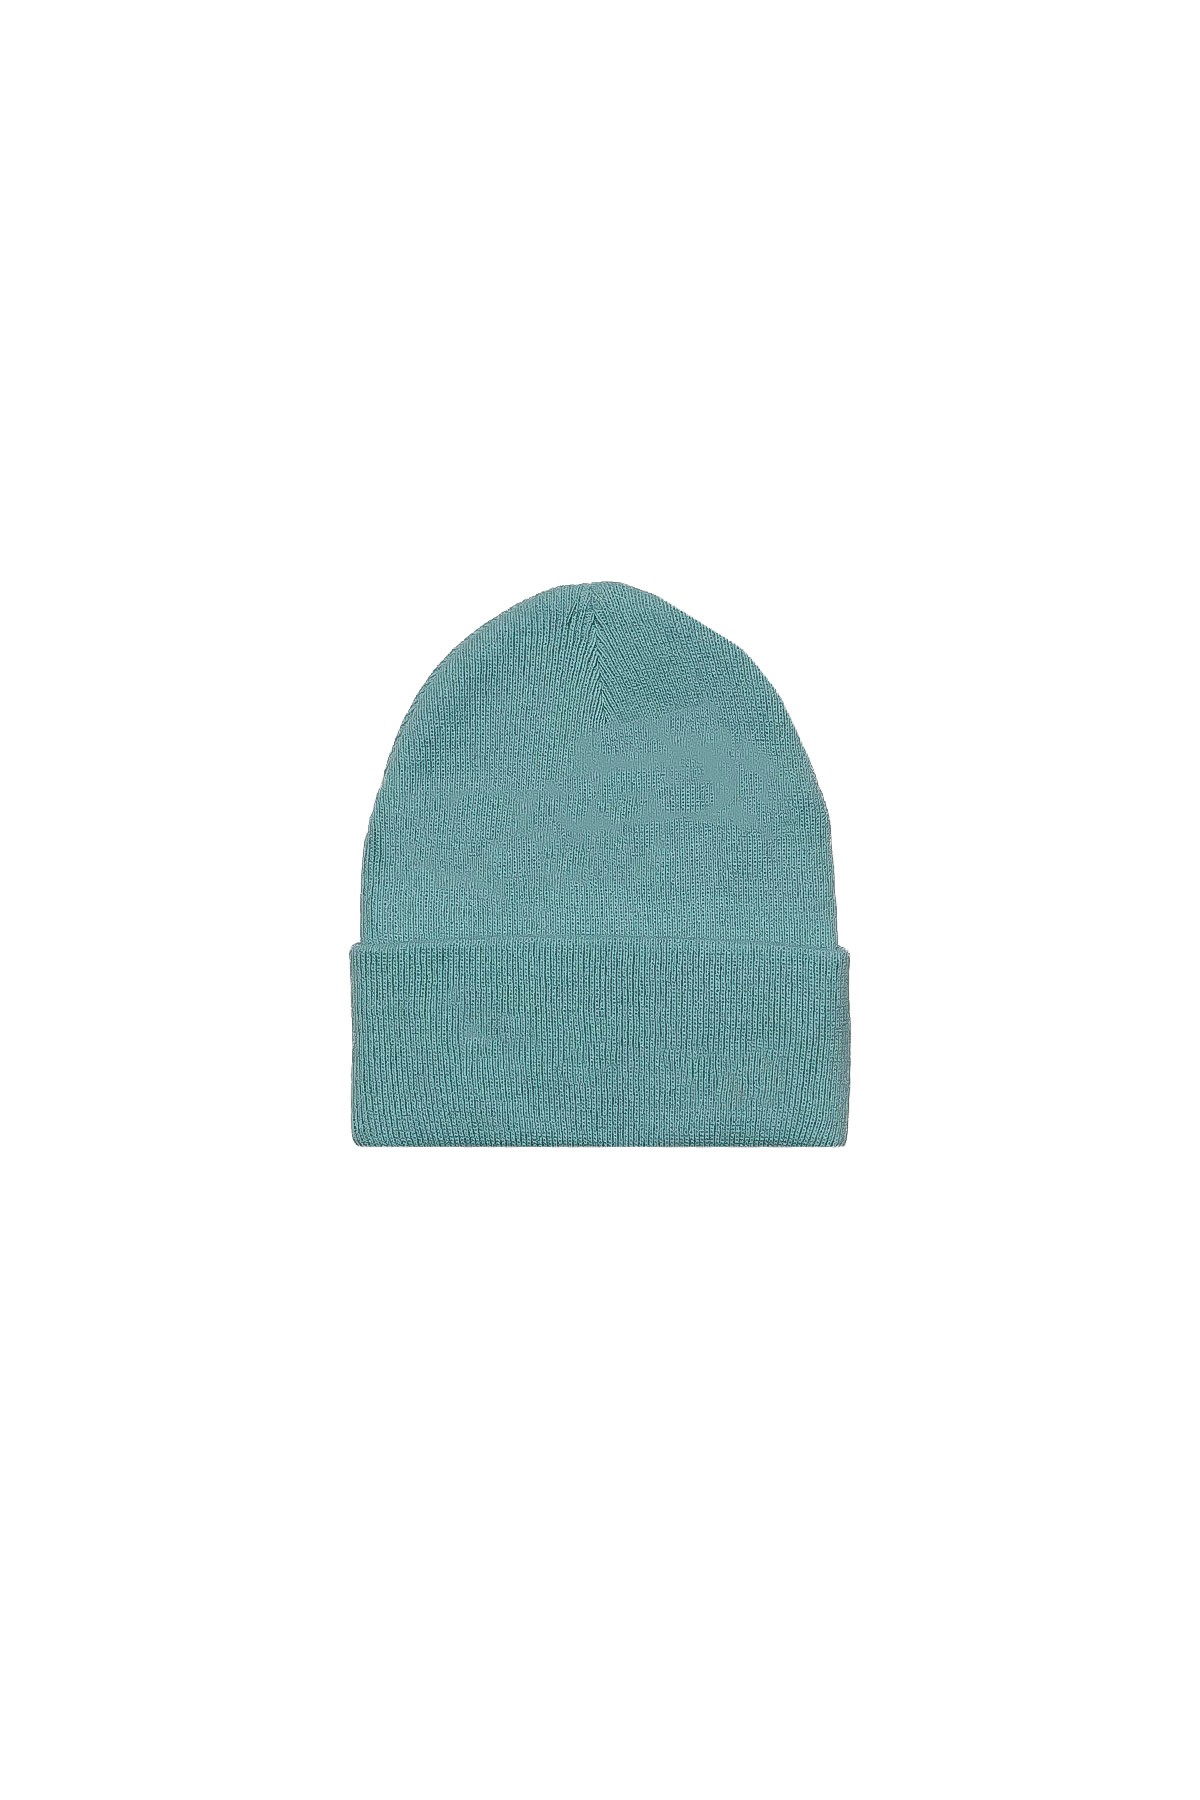 كاين - قبعة بسيطة - أزرق الطفل